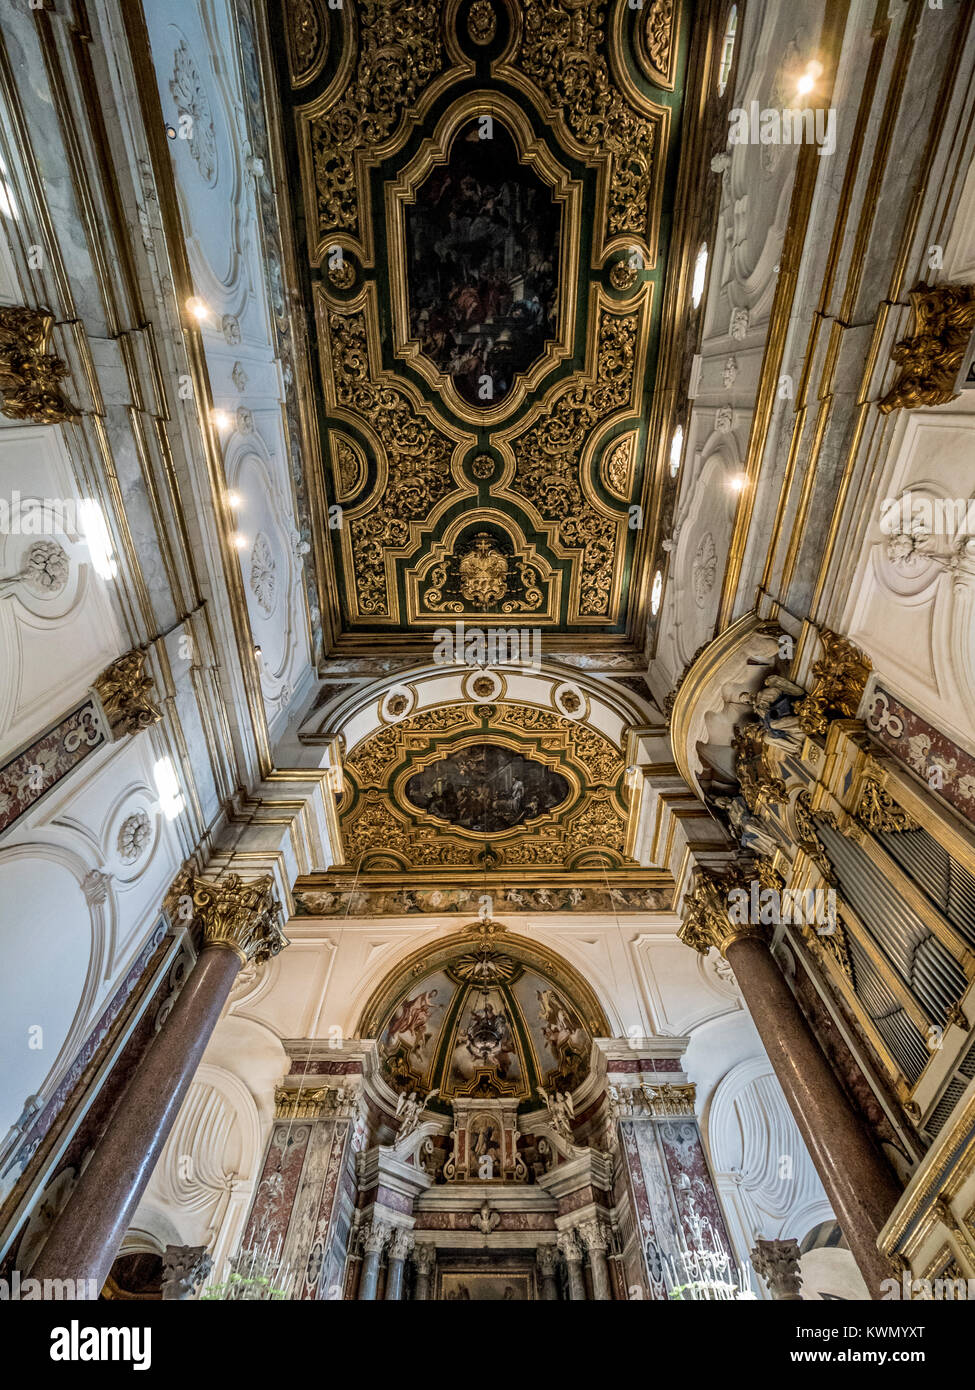 Intérieur de la cathédrale d'Amalfi. La Cathédrale de l'ensemble monumental de saint André à Amalfi, Italie. Banque D'Images